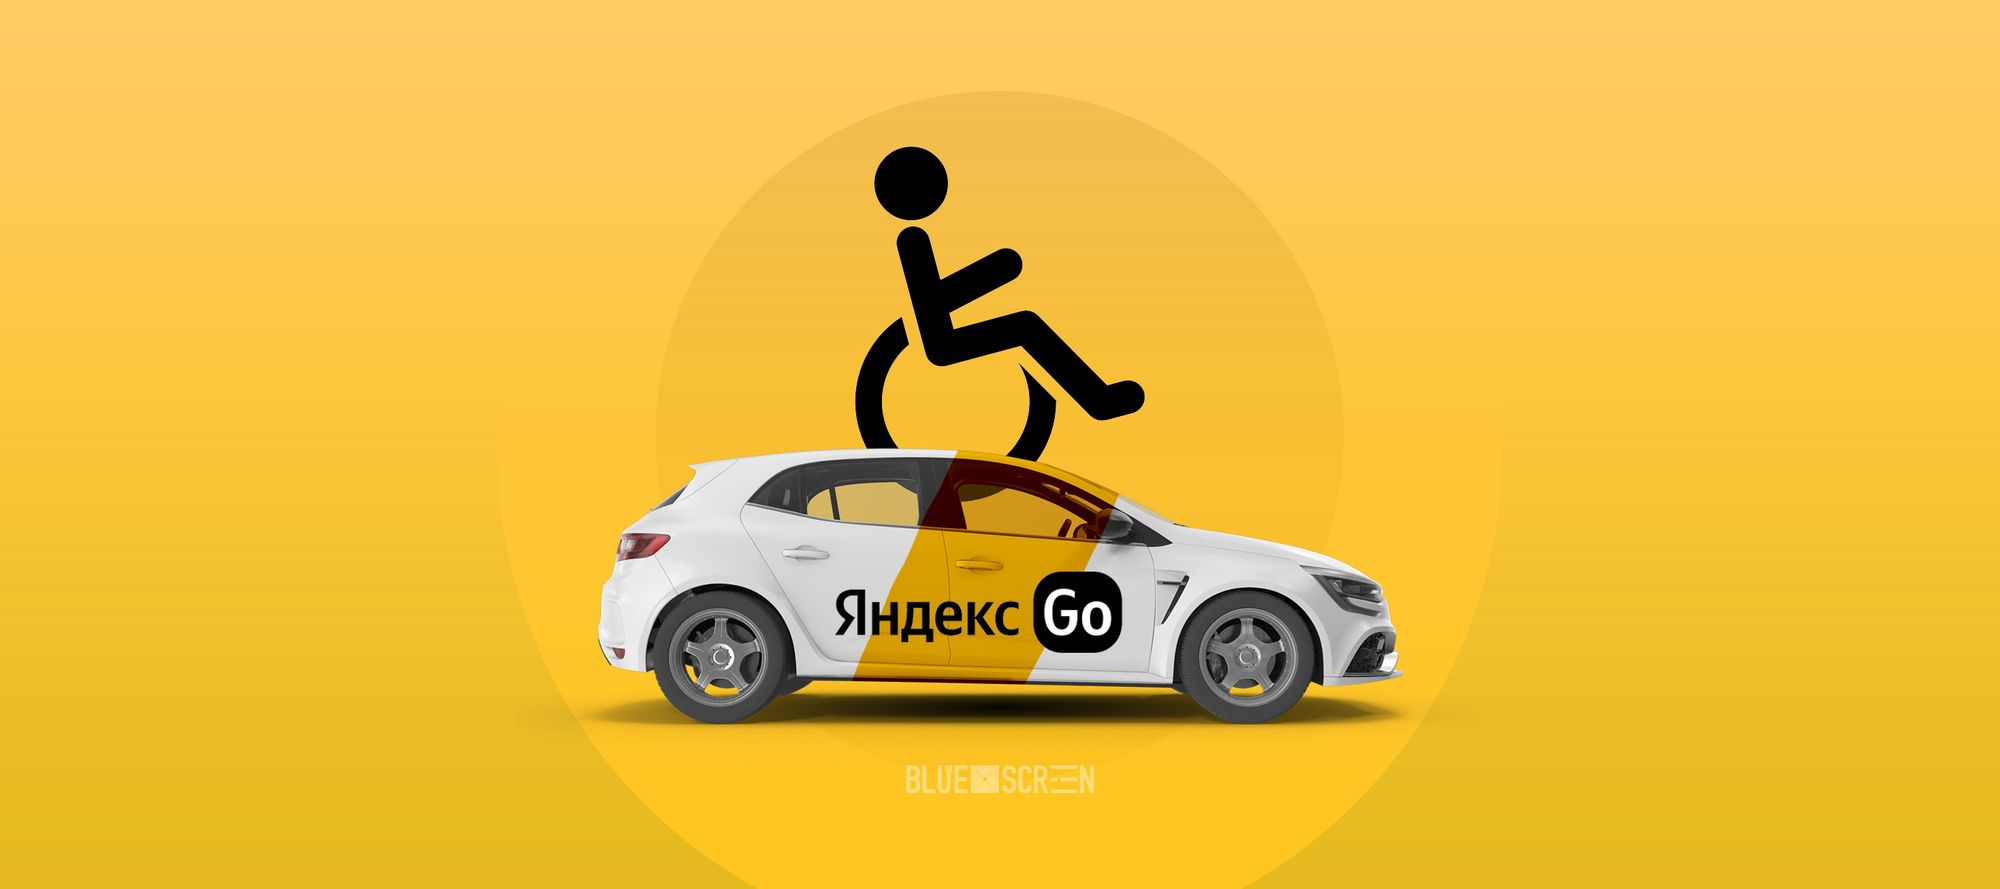 Яндекс Go адаптируют в Казахстане для маломобильных пользователей